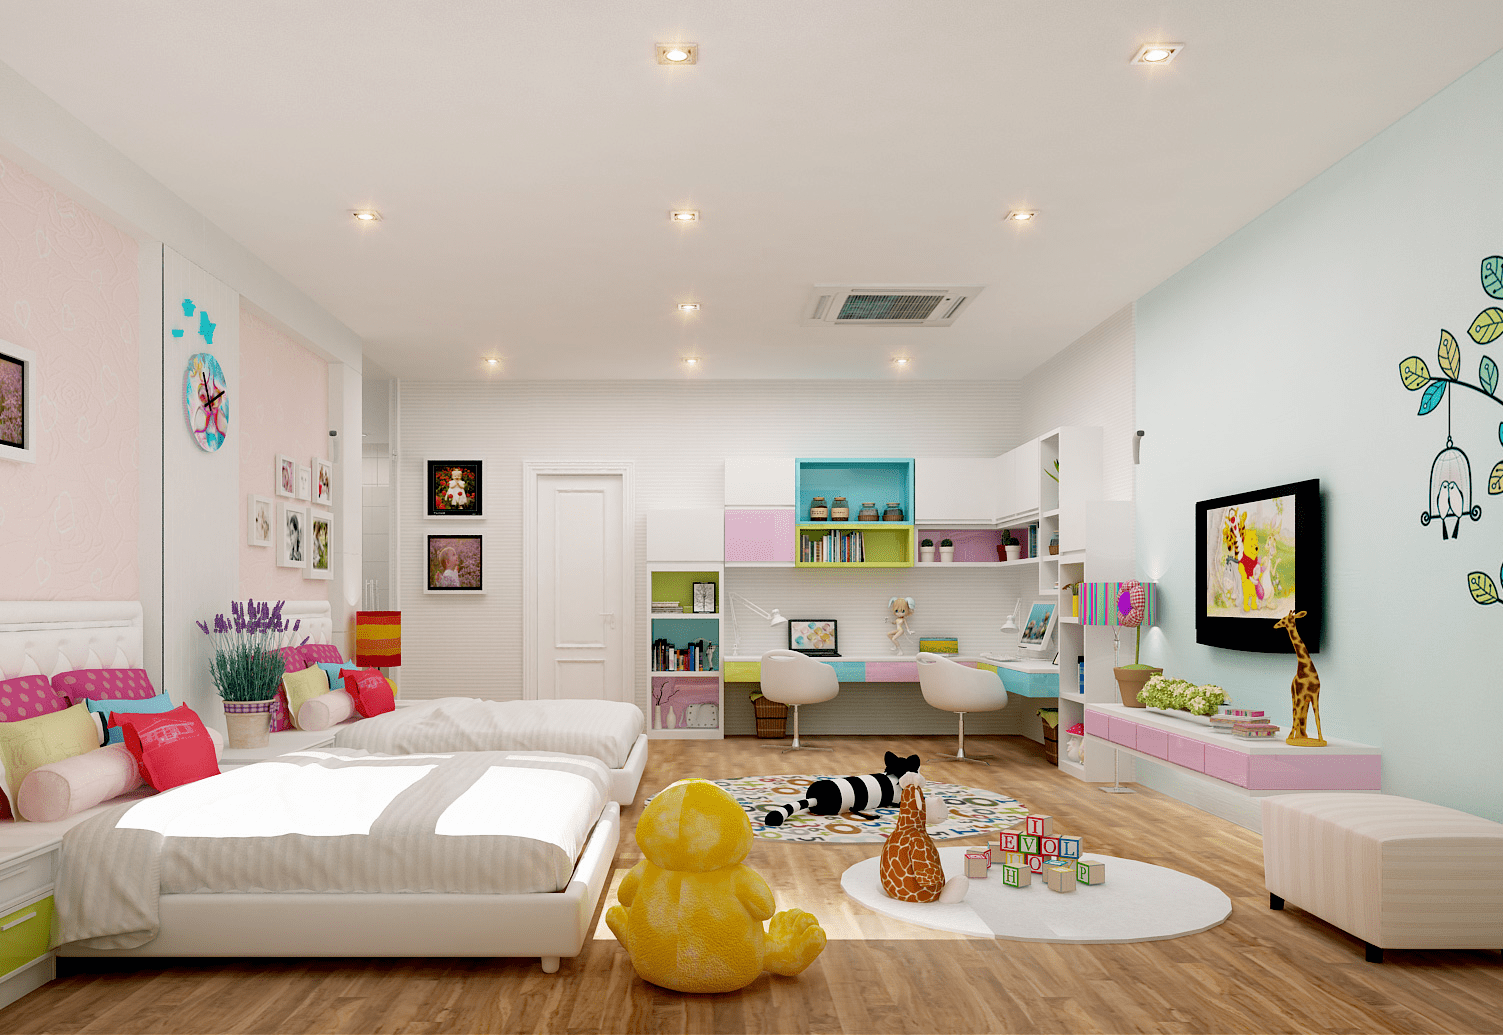 Mẫu trần thạch cao phẳng cho phòng ngủ trẻ em đẹp, màu sắc hài hòa với tổng thể không gian